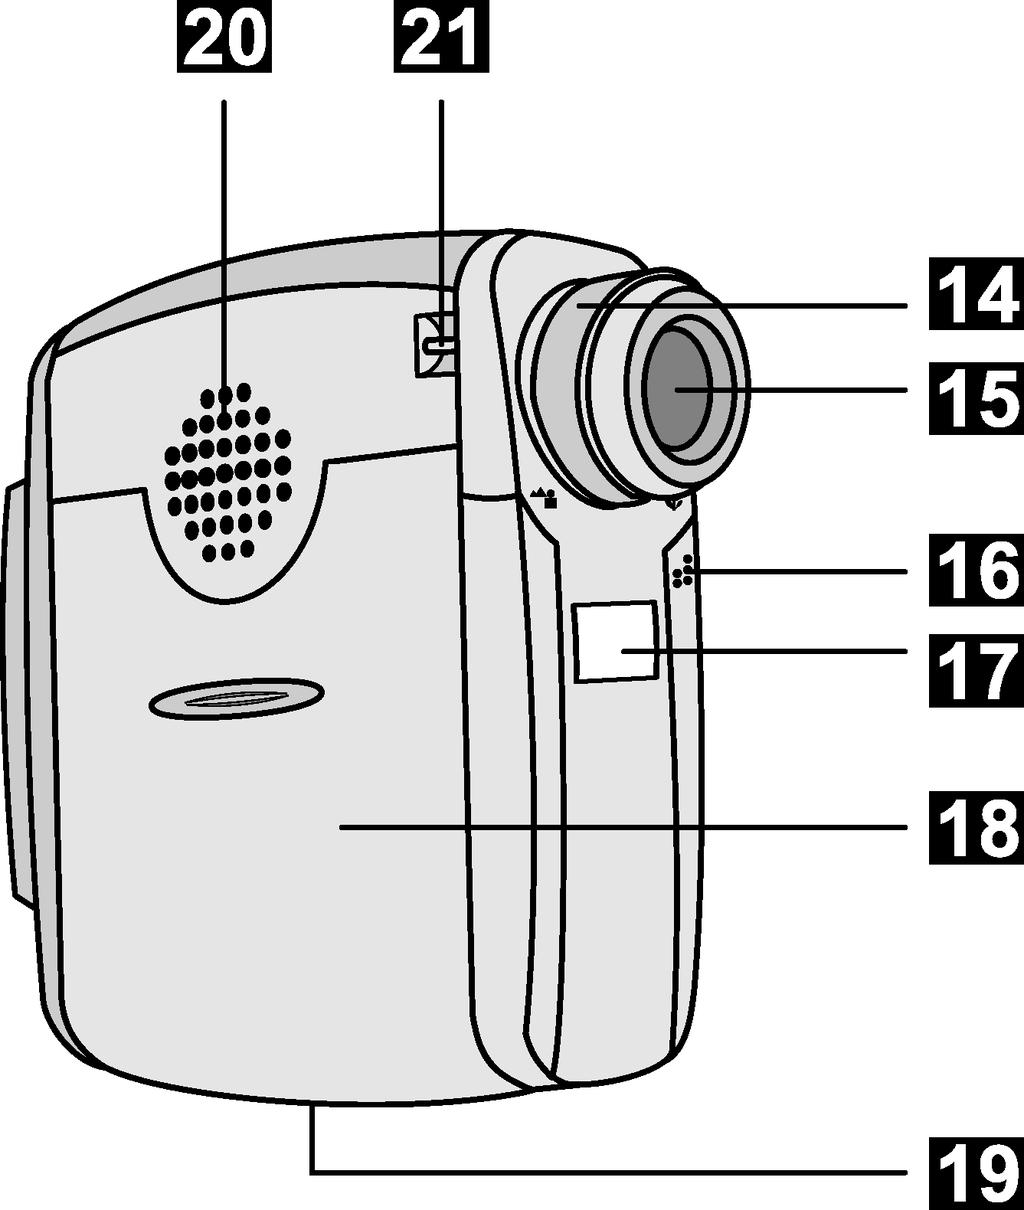 0: Interruptor para encendido / apagado del LCD : Interruptor de salida de tarjeta CF : Buscador de imágenes 3: Pantalla LCD 4: Interruptor Macro (focus switch) 5: Objetivo 6: Micrófono 7: Espejo